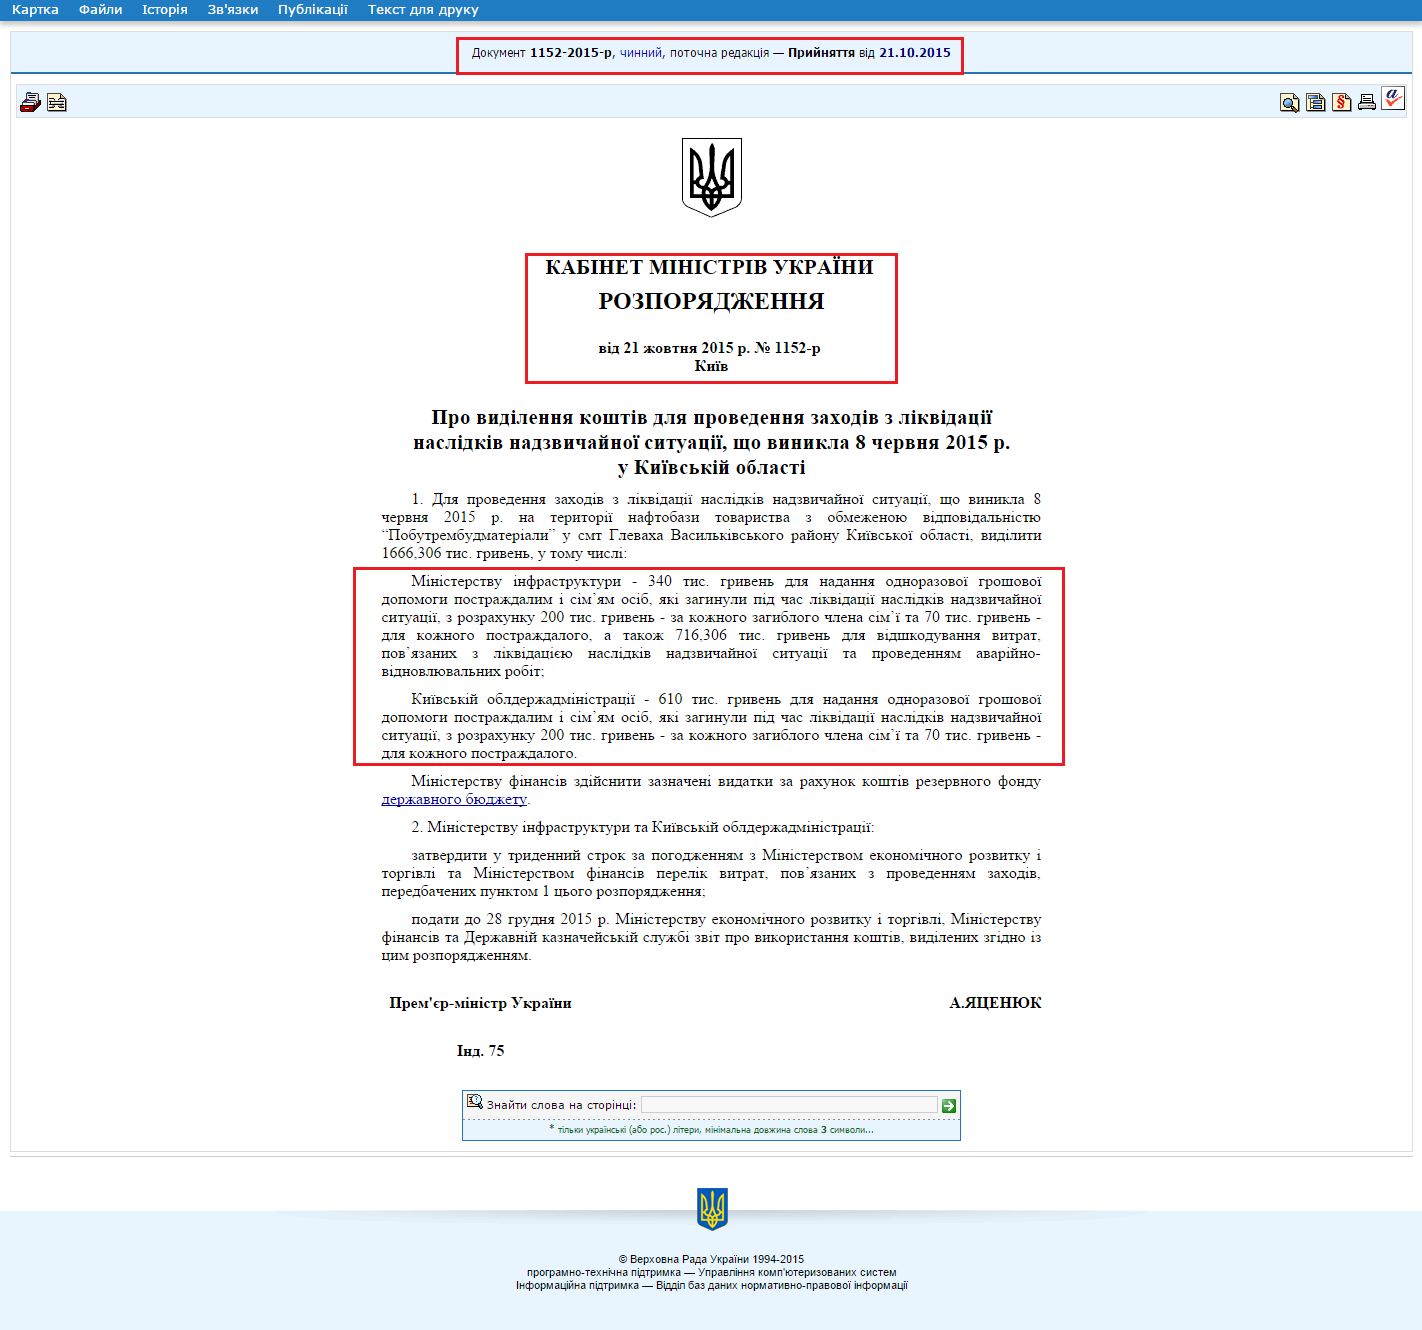 http://zakon4.rada.gov.ua/laws/show/1152-2015-%D1%80